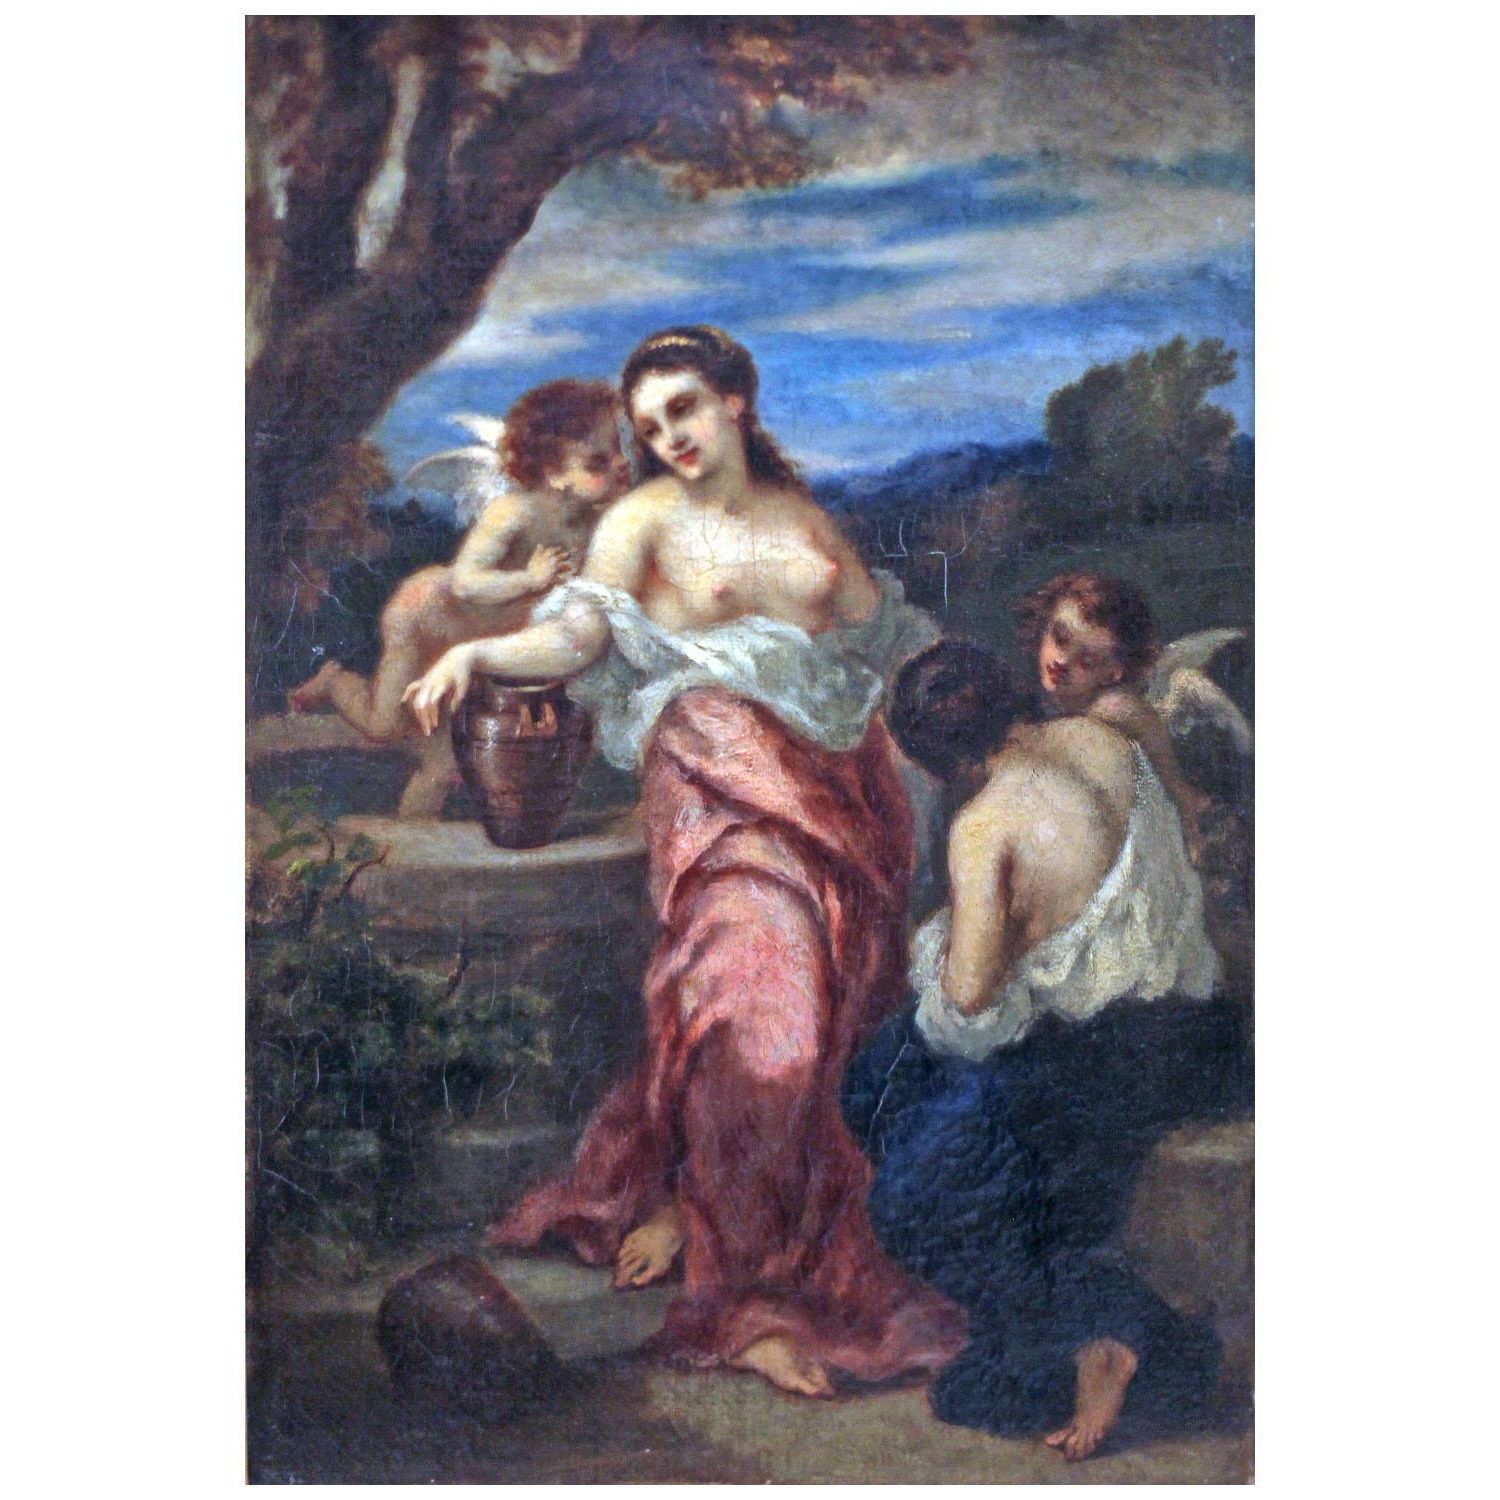 Narcisse Diaz. Le puit, nymphes et Amour. 1850. Musee d’Orsay